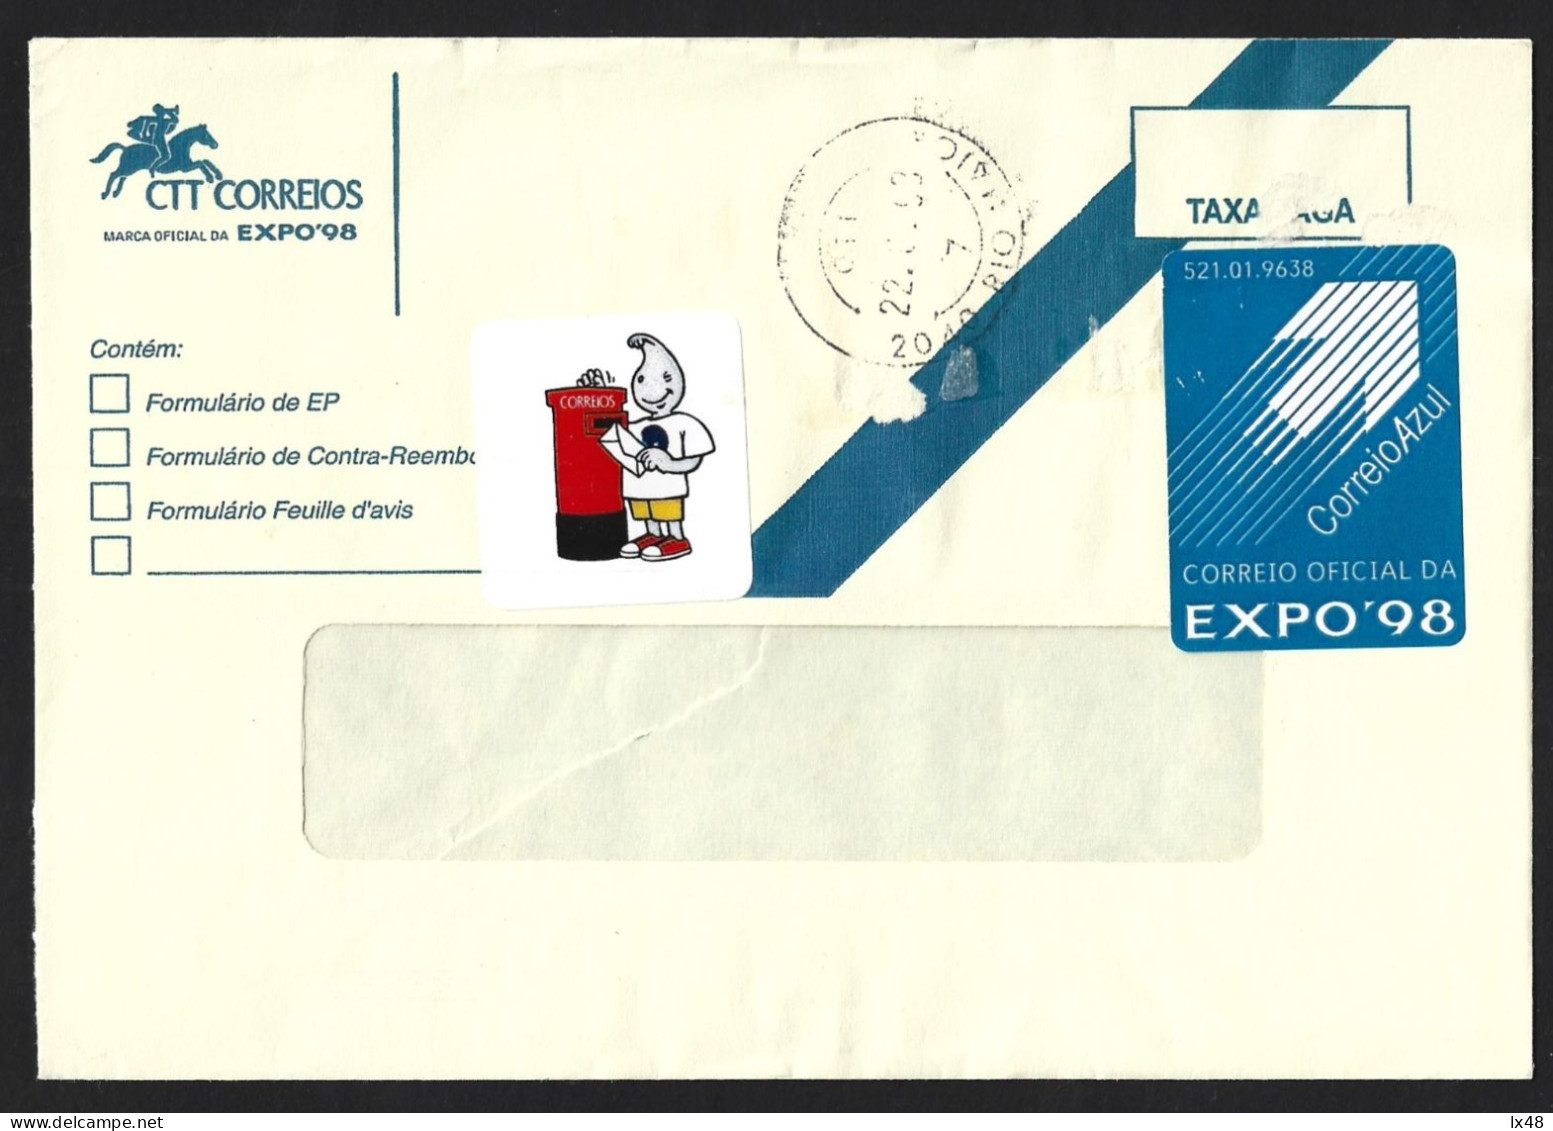 Carta Expedida Da EXPO 98 Com Vinheta Do Gil E Vinheta De Correio Azul. Letter Sent EXPO 98 With Sticker From Gil. - Lettres & Documents